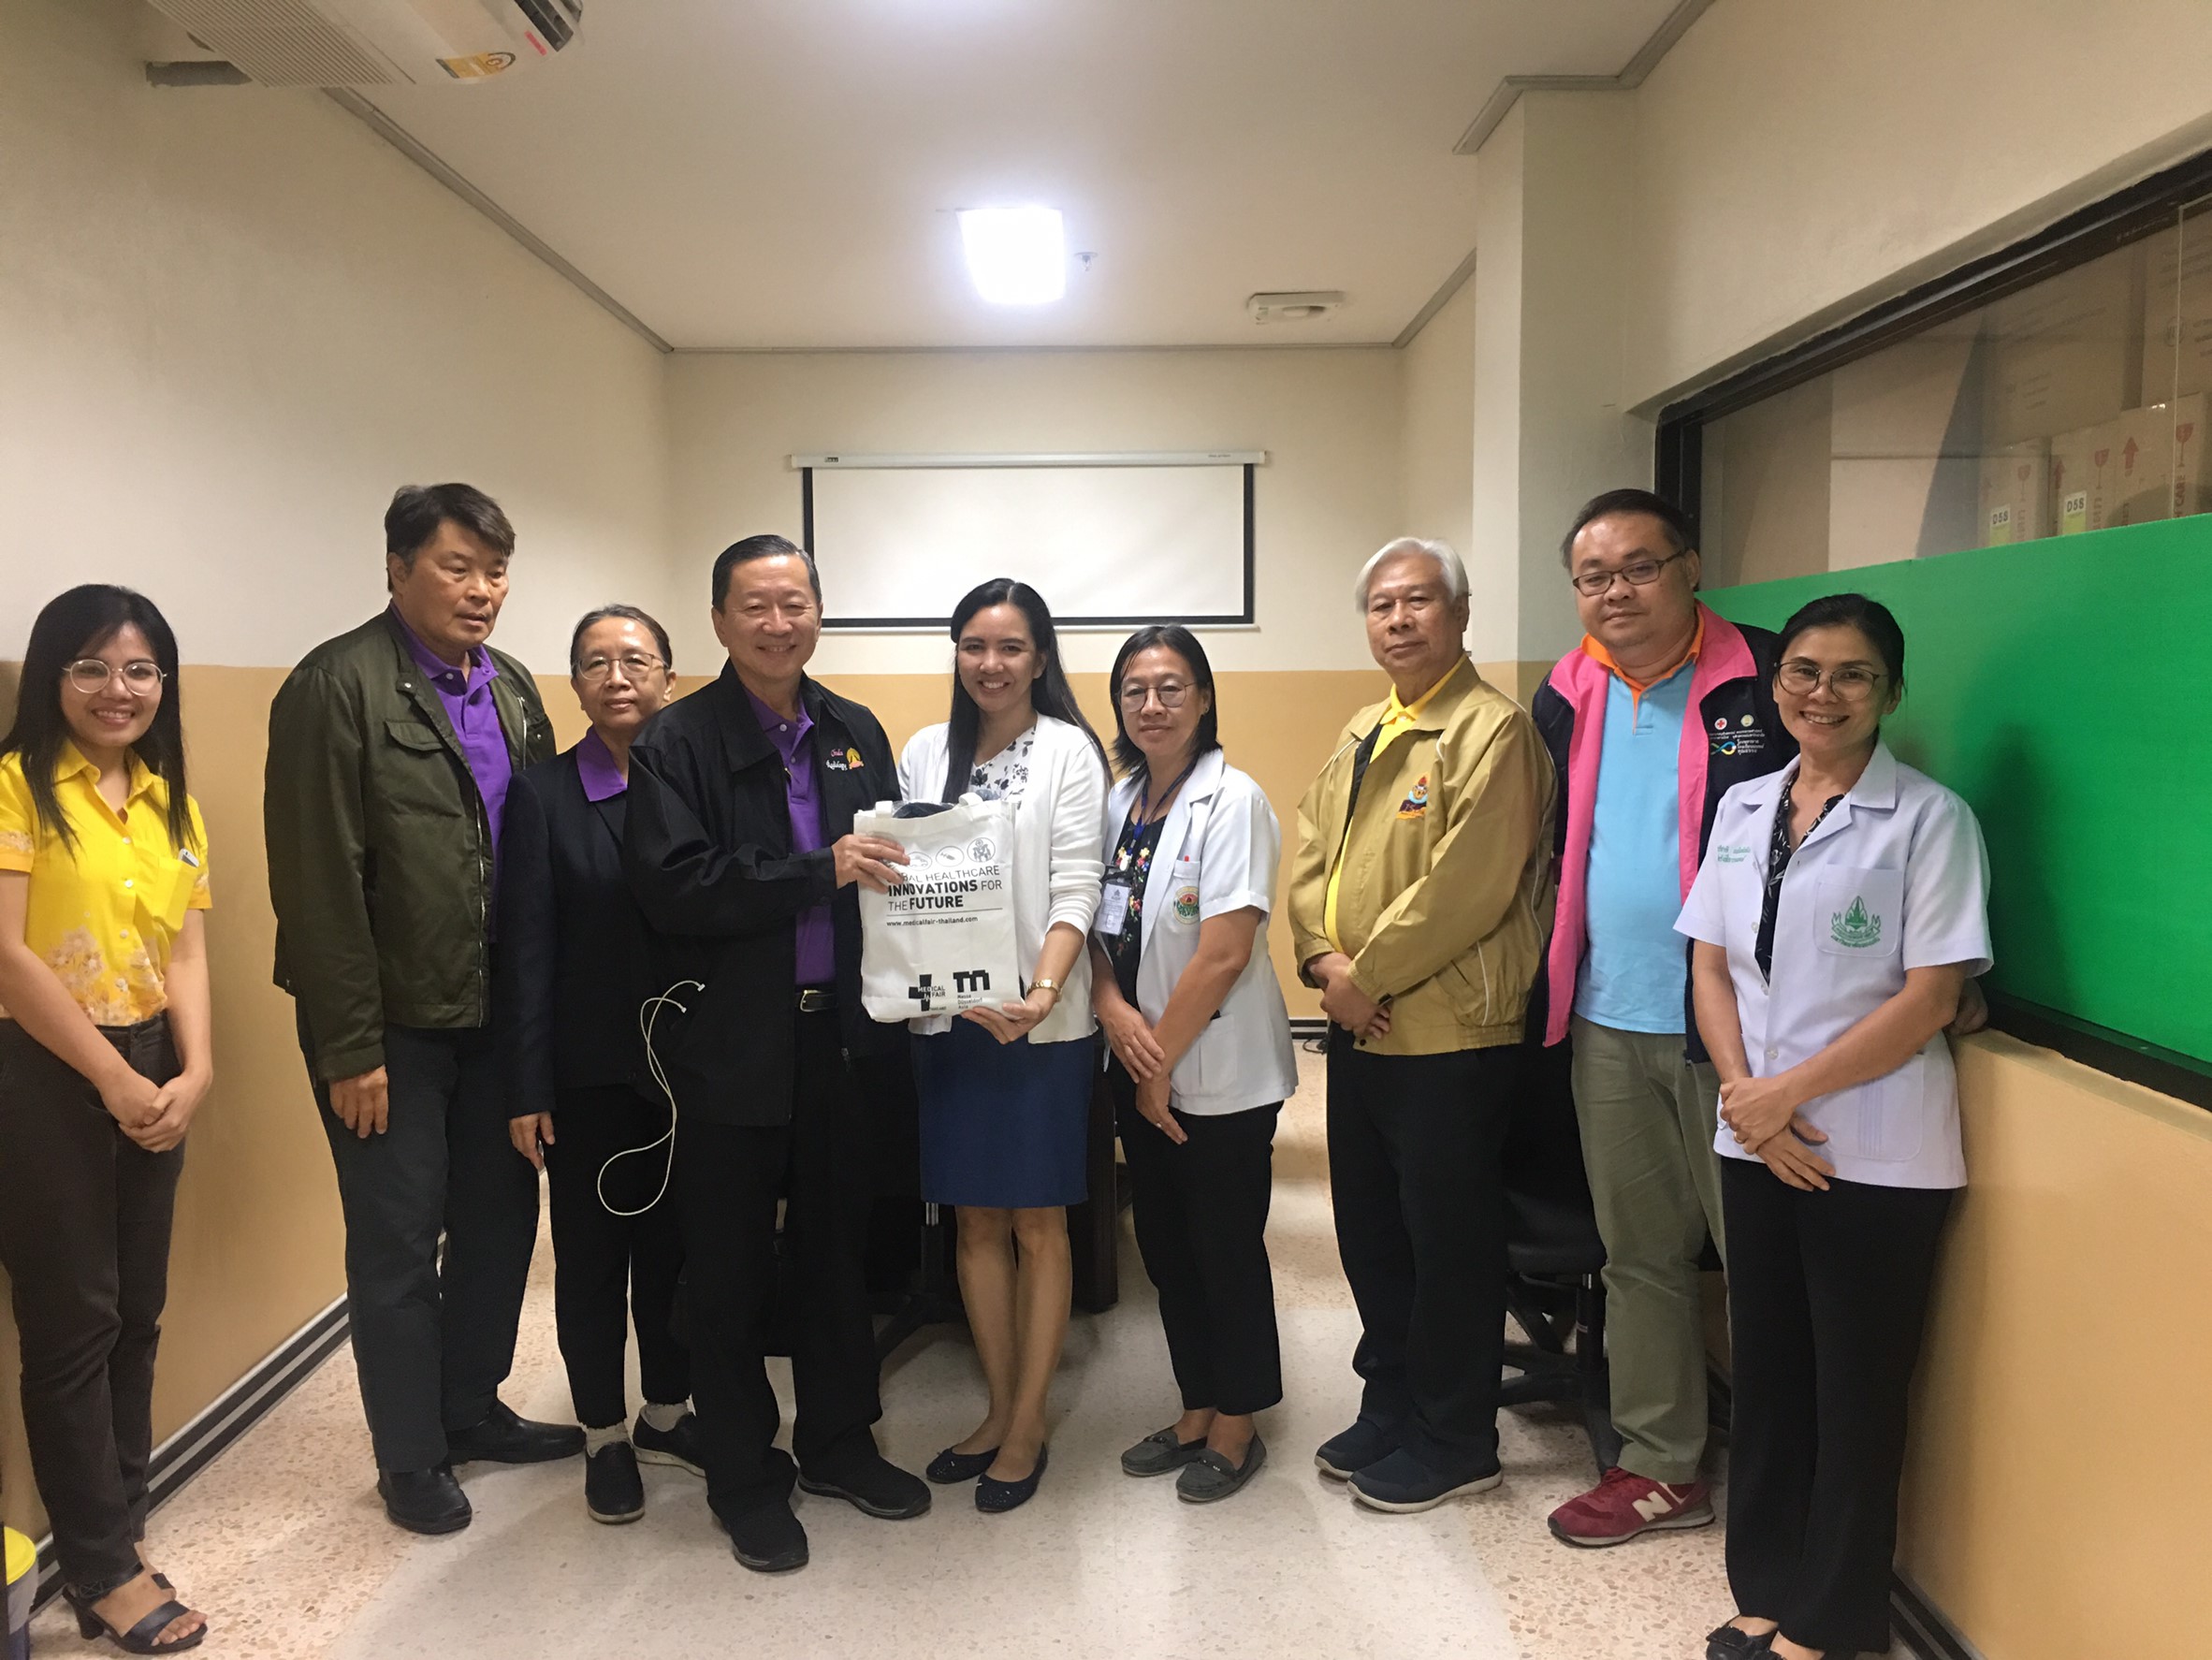 ประชุมวิชาการร่วมกับรังสีการแพทย์แห่งประเทศไทย ครั้งที่17 27-29 พ.ย. - พร้อมเข้าเยี่ยมและให้กำลังใจหน่วยงานรังสีวิทยาในพื้นที่จังหวัดอุบลราชธานีระหว่างวันที่ 25-26 พฤศจิกายน 2562 58